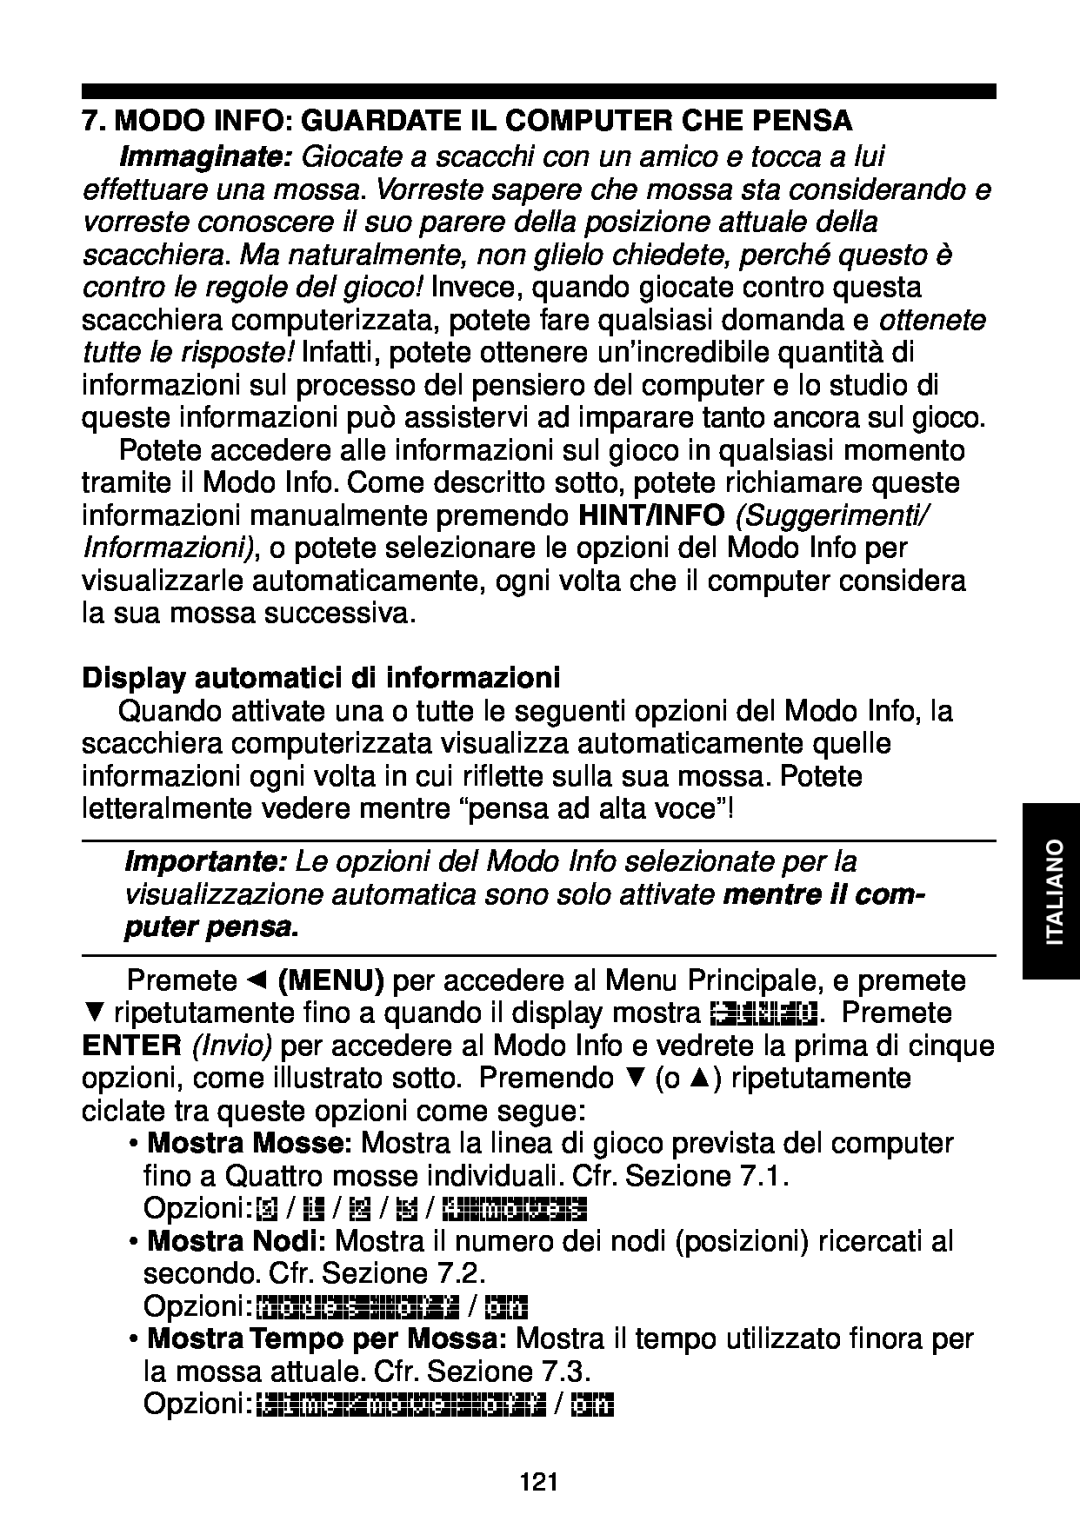 Saitek Maestro Travel Chess Computer manual Modo Info Guardate Il Computer Che Pensa, Display automatici di informazioni 